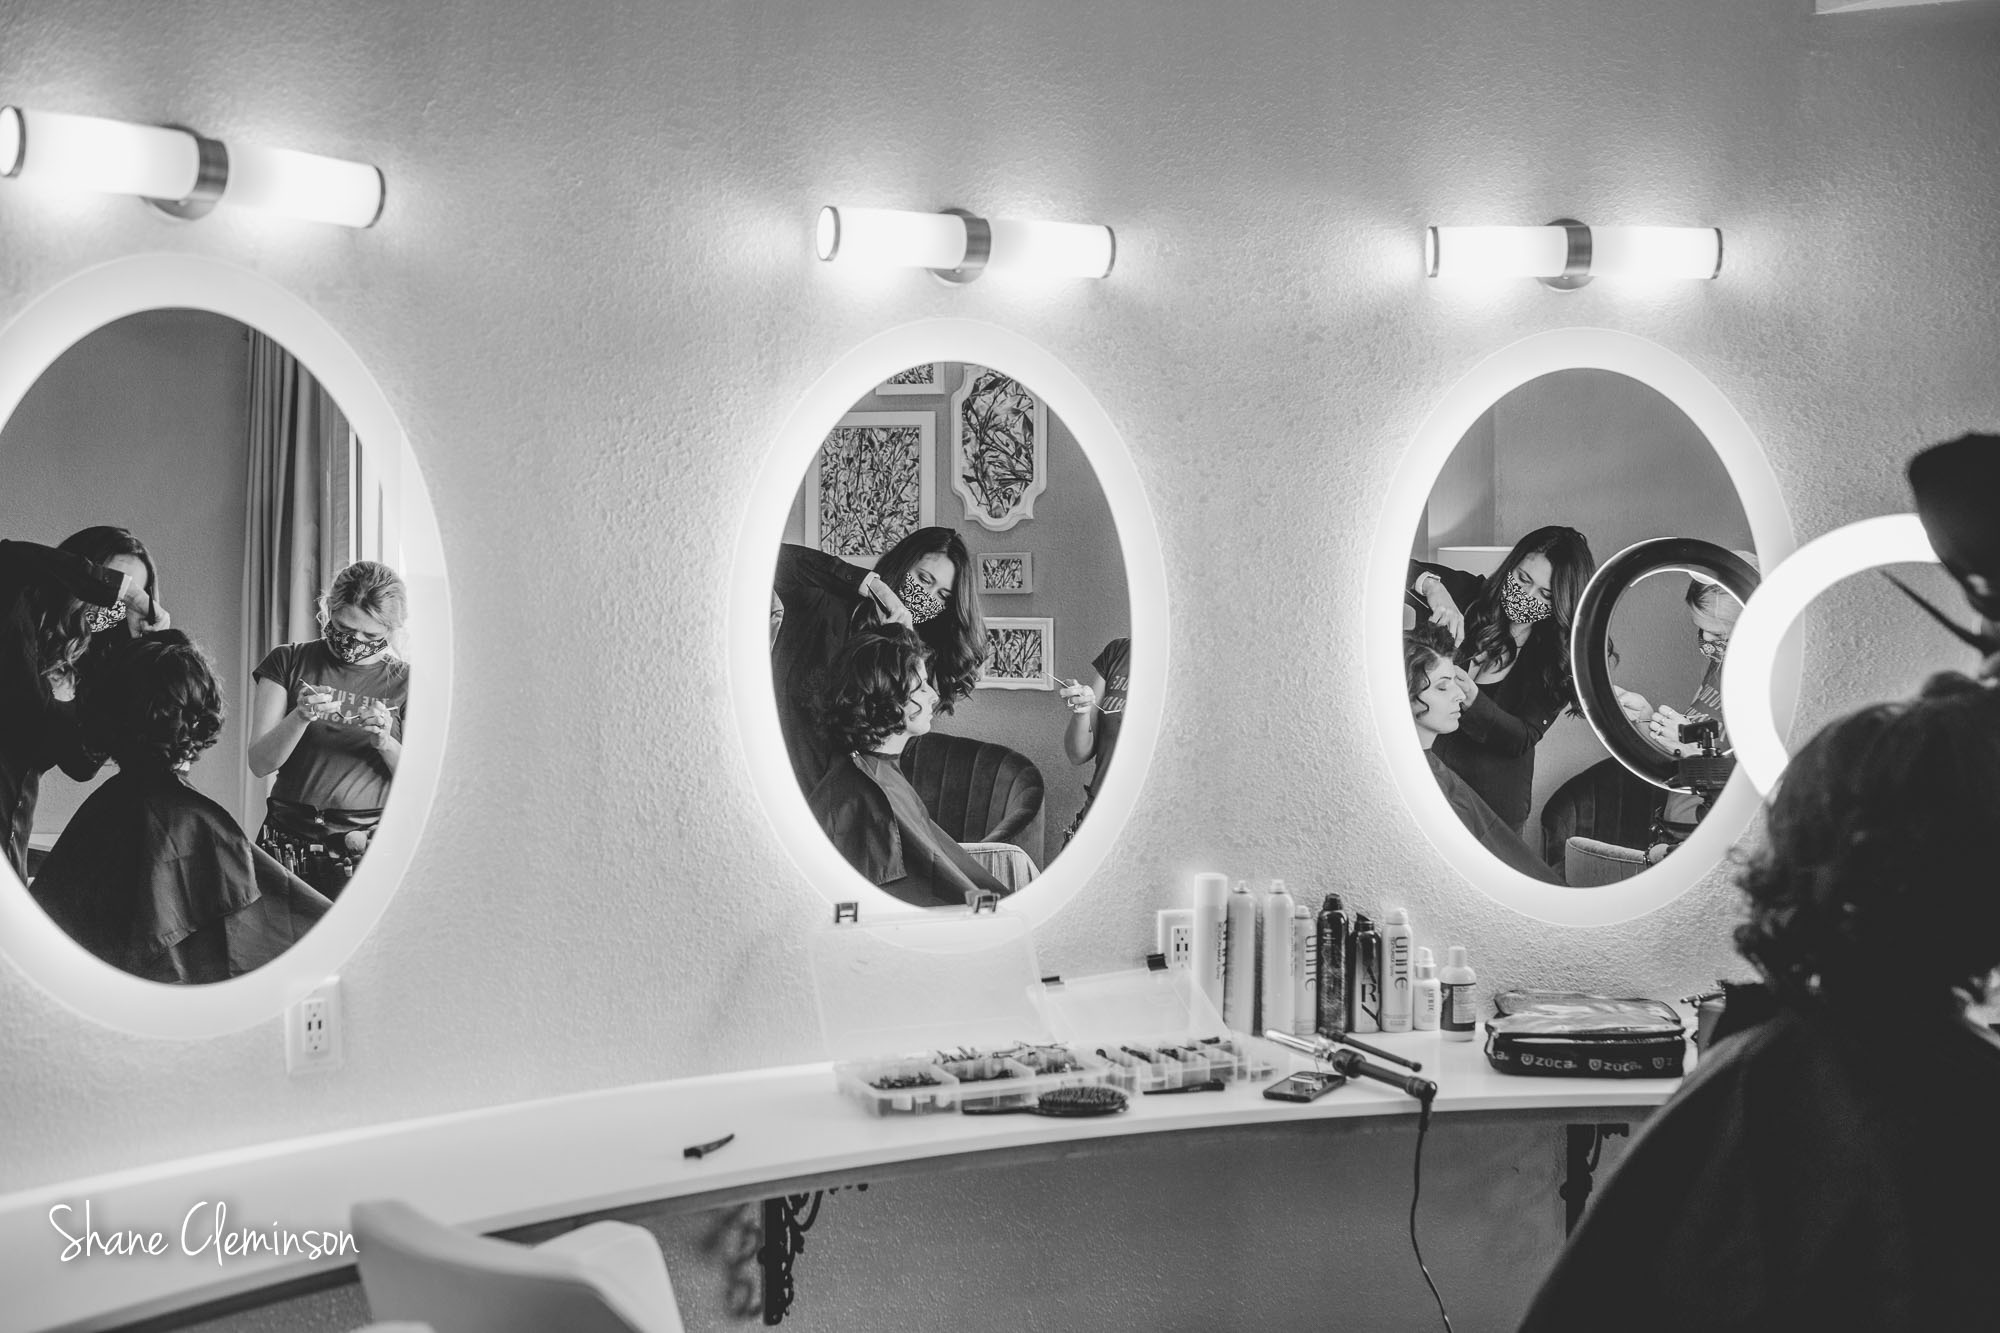 Jay Marie Salon doing hair on a model.